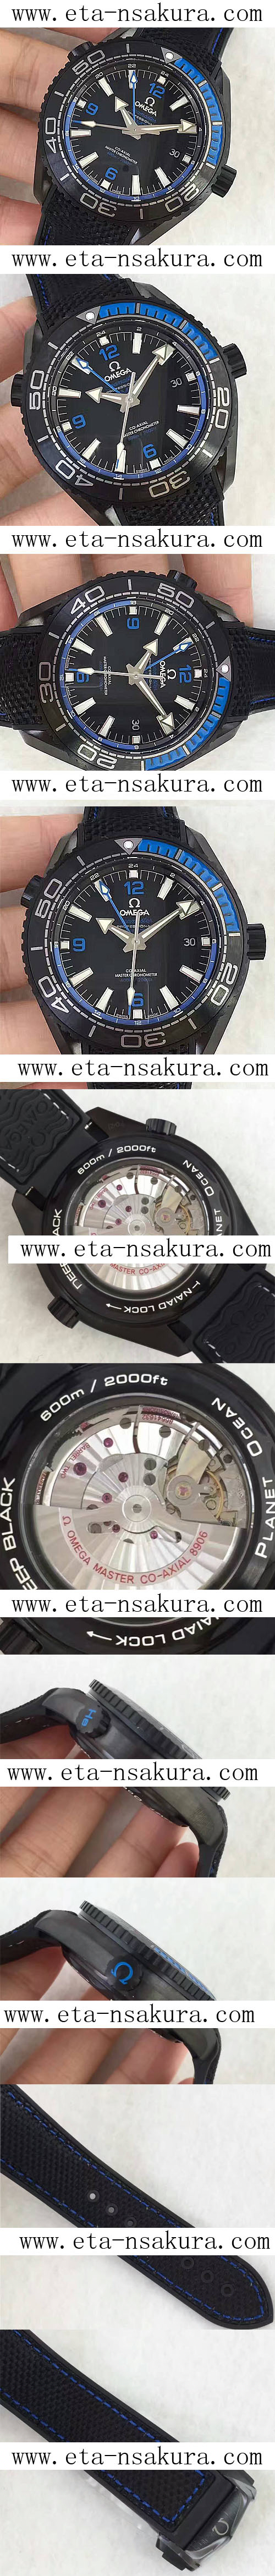 スーパーコピー時計オメガ シーマスター300 ヴィンテージ， Japan MIYOTA 8906 ムーブメント搭載！JH製品 - ウインドウを閉じる